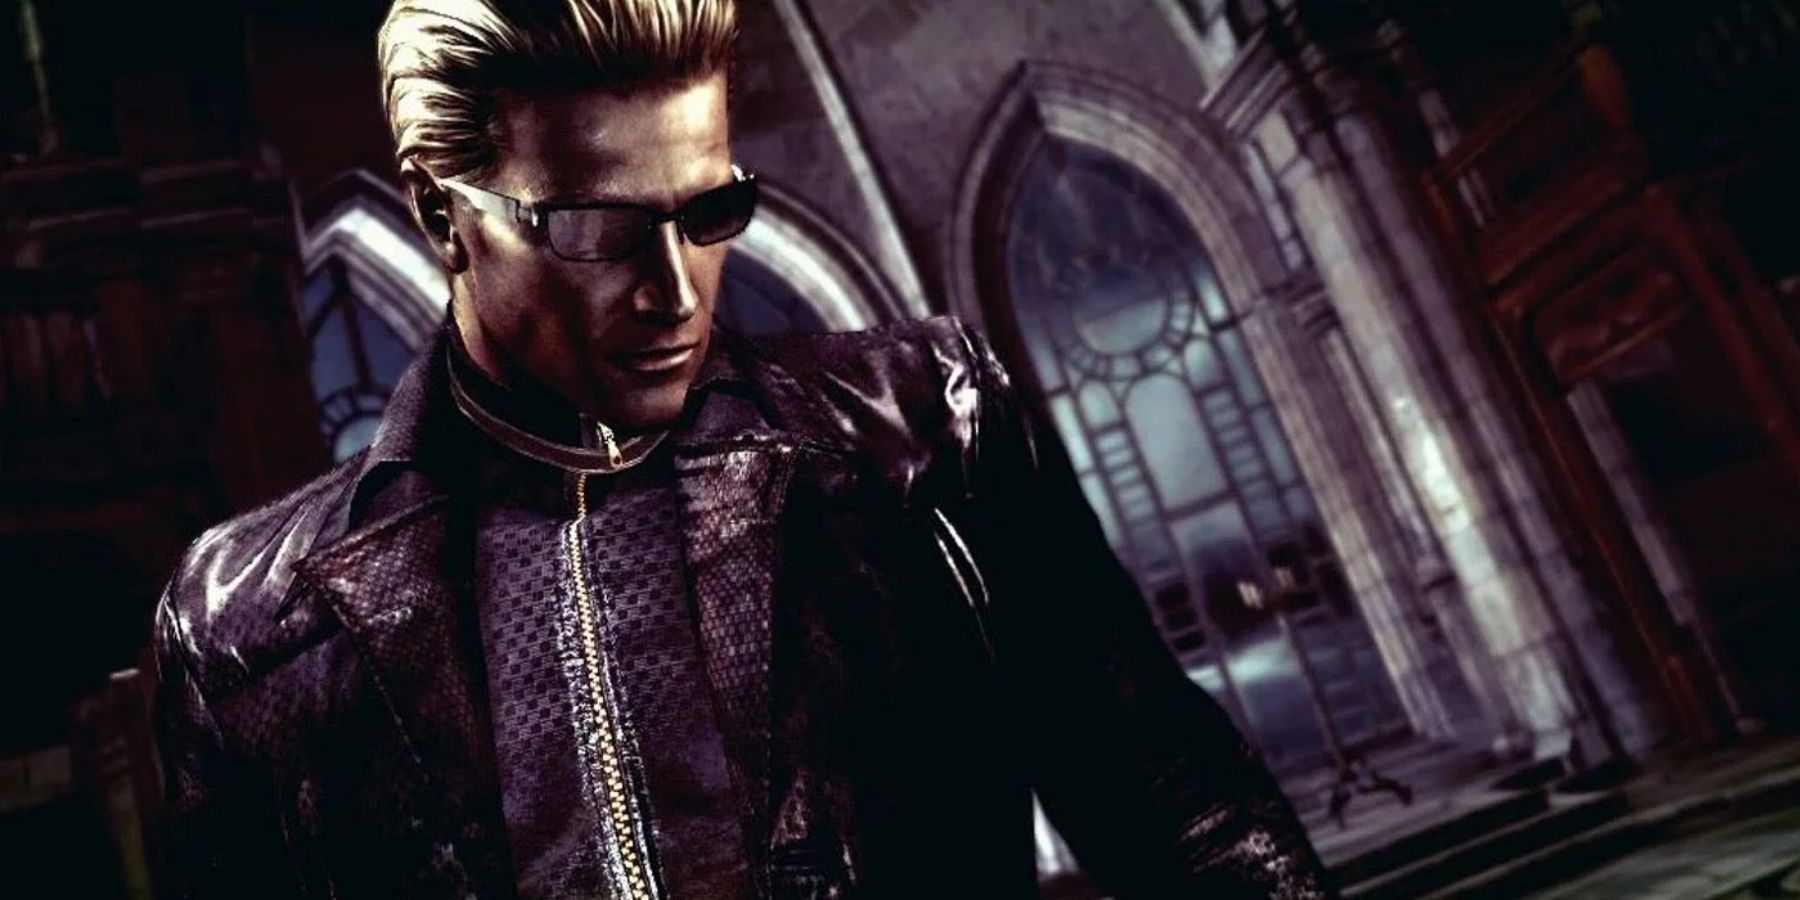 Albert Wesker Resident Evil 5 sunglasses and black jacket